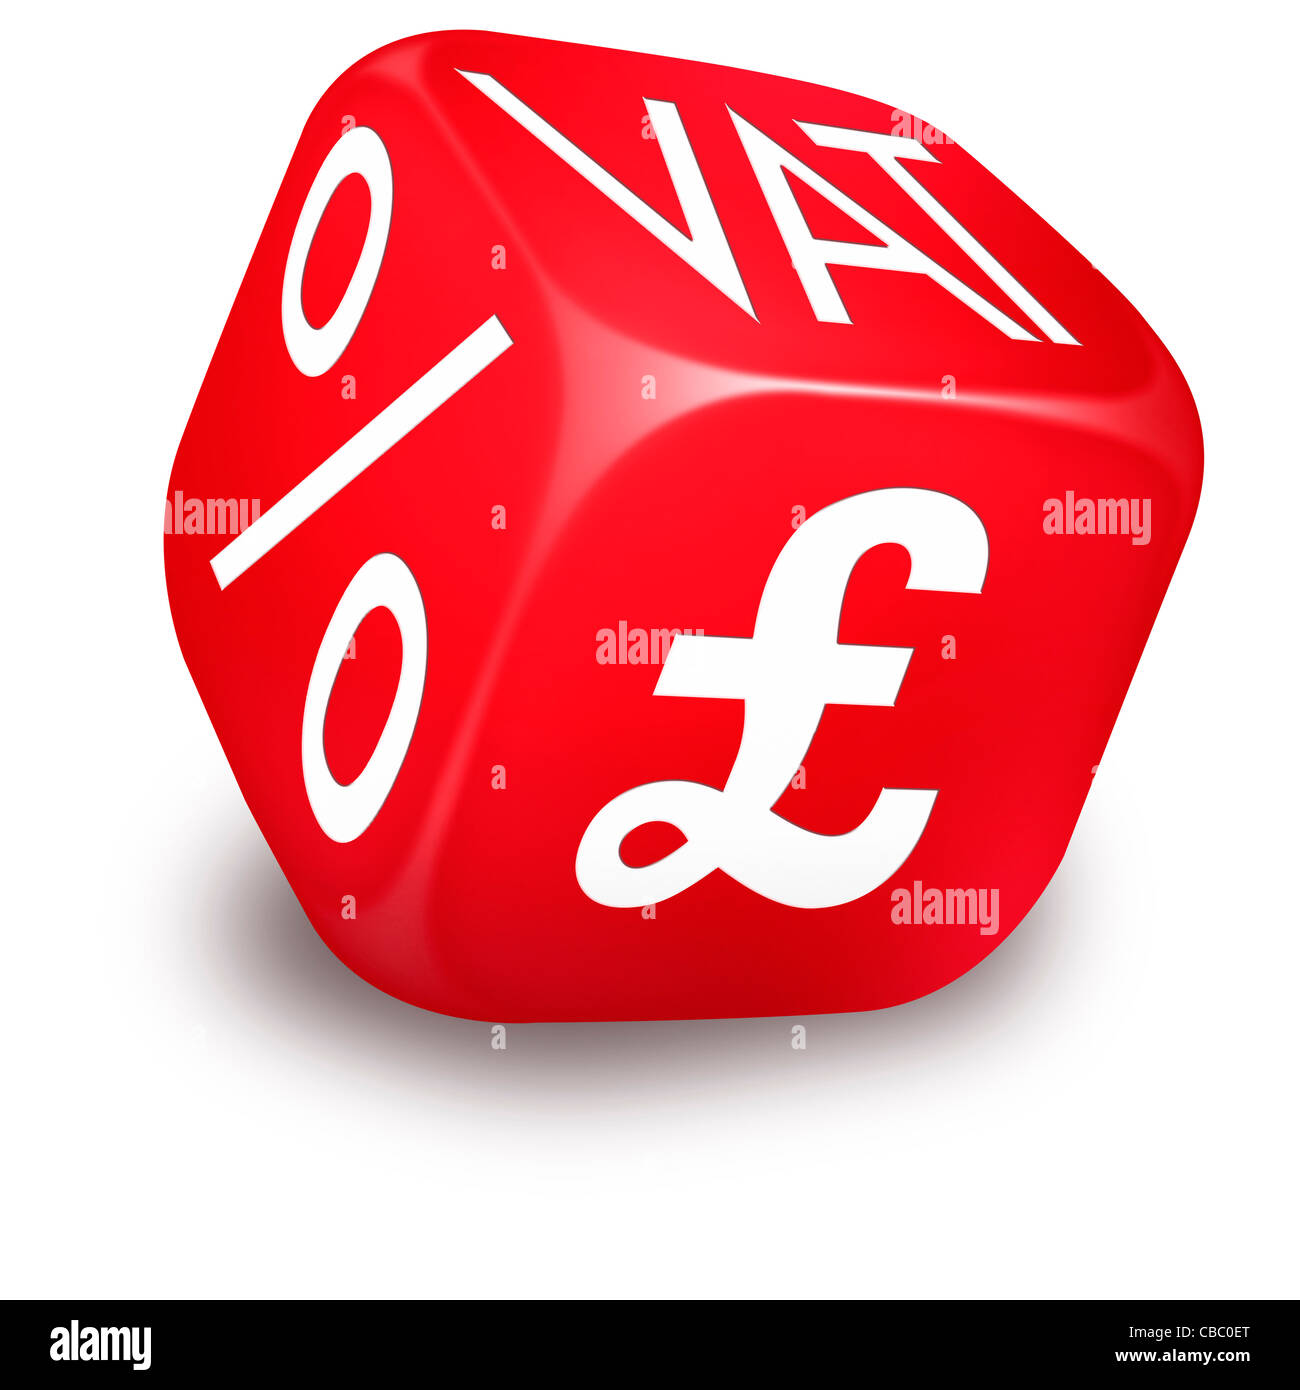 Roter Würfel mit Mwst., Prozentsatz und britische Pfund Symbole auf den Seiten gedruckt Stockfoto